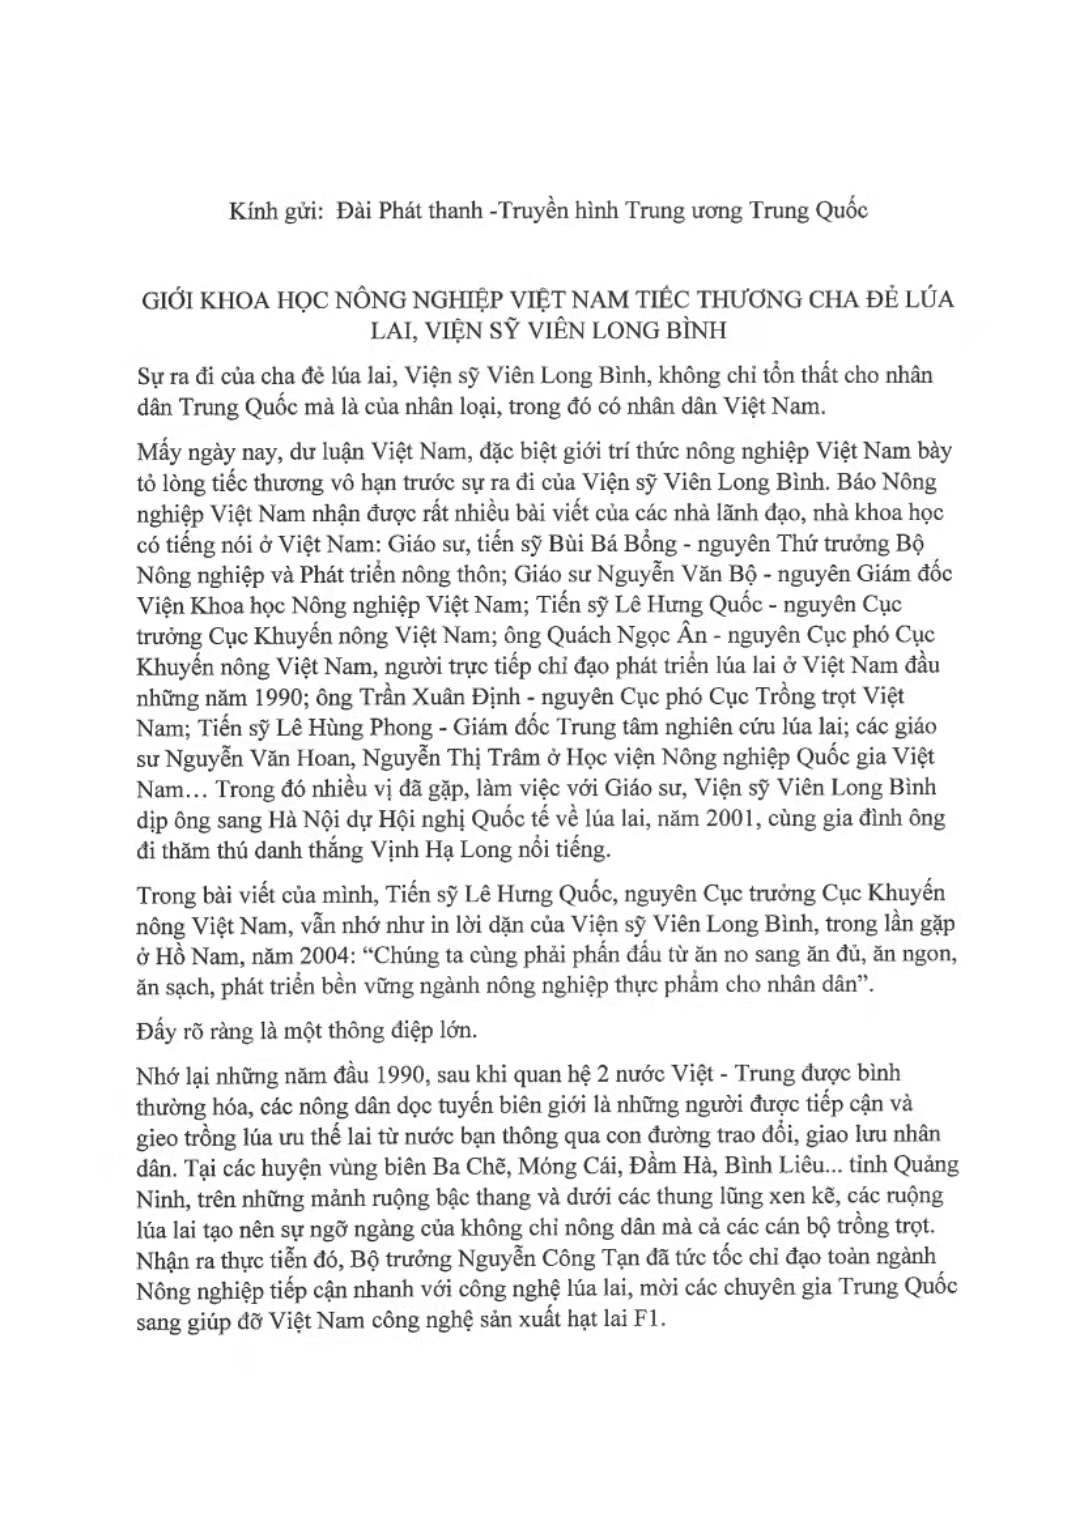 越《农业报》负责人致函中央广播电视总台：越南农业界人士沉痛悼念袁隆平